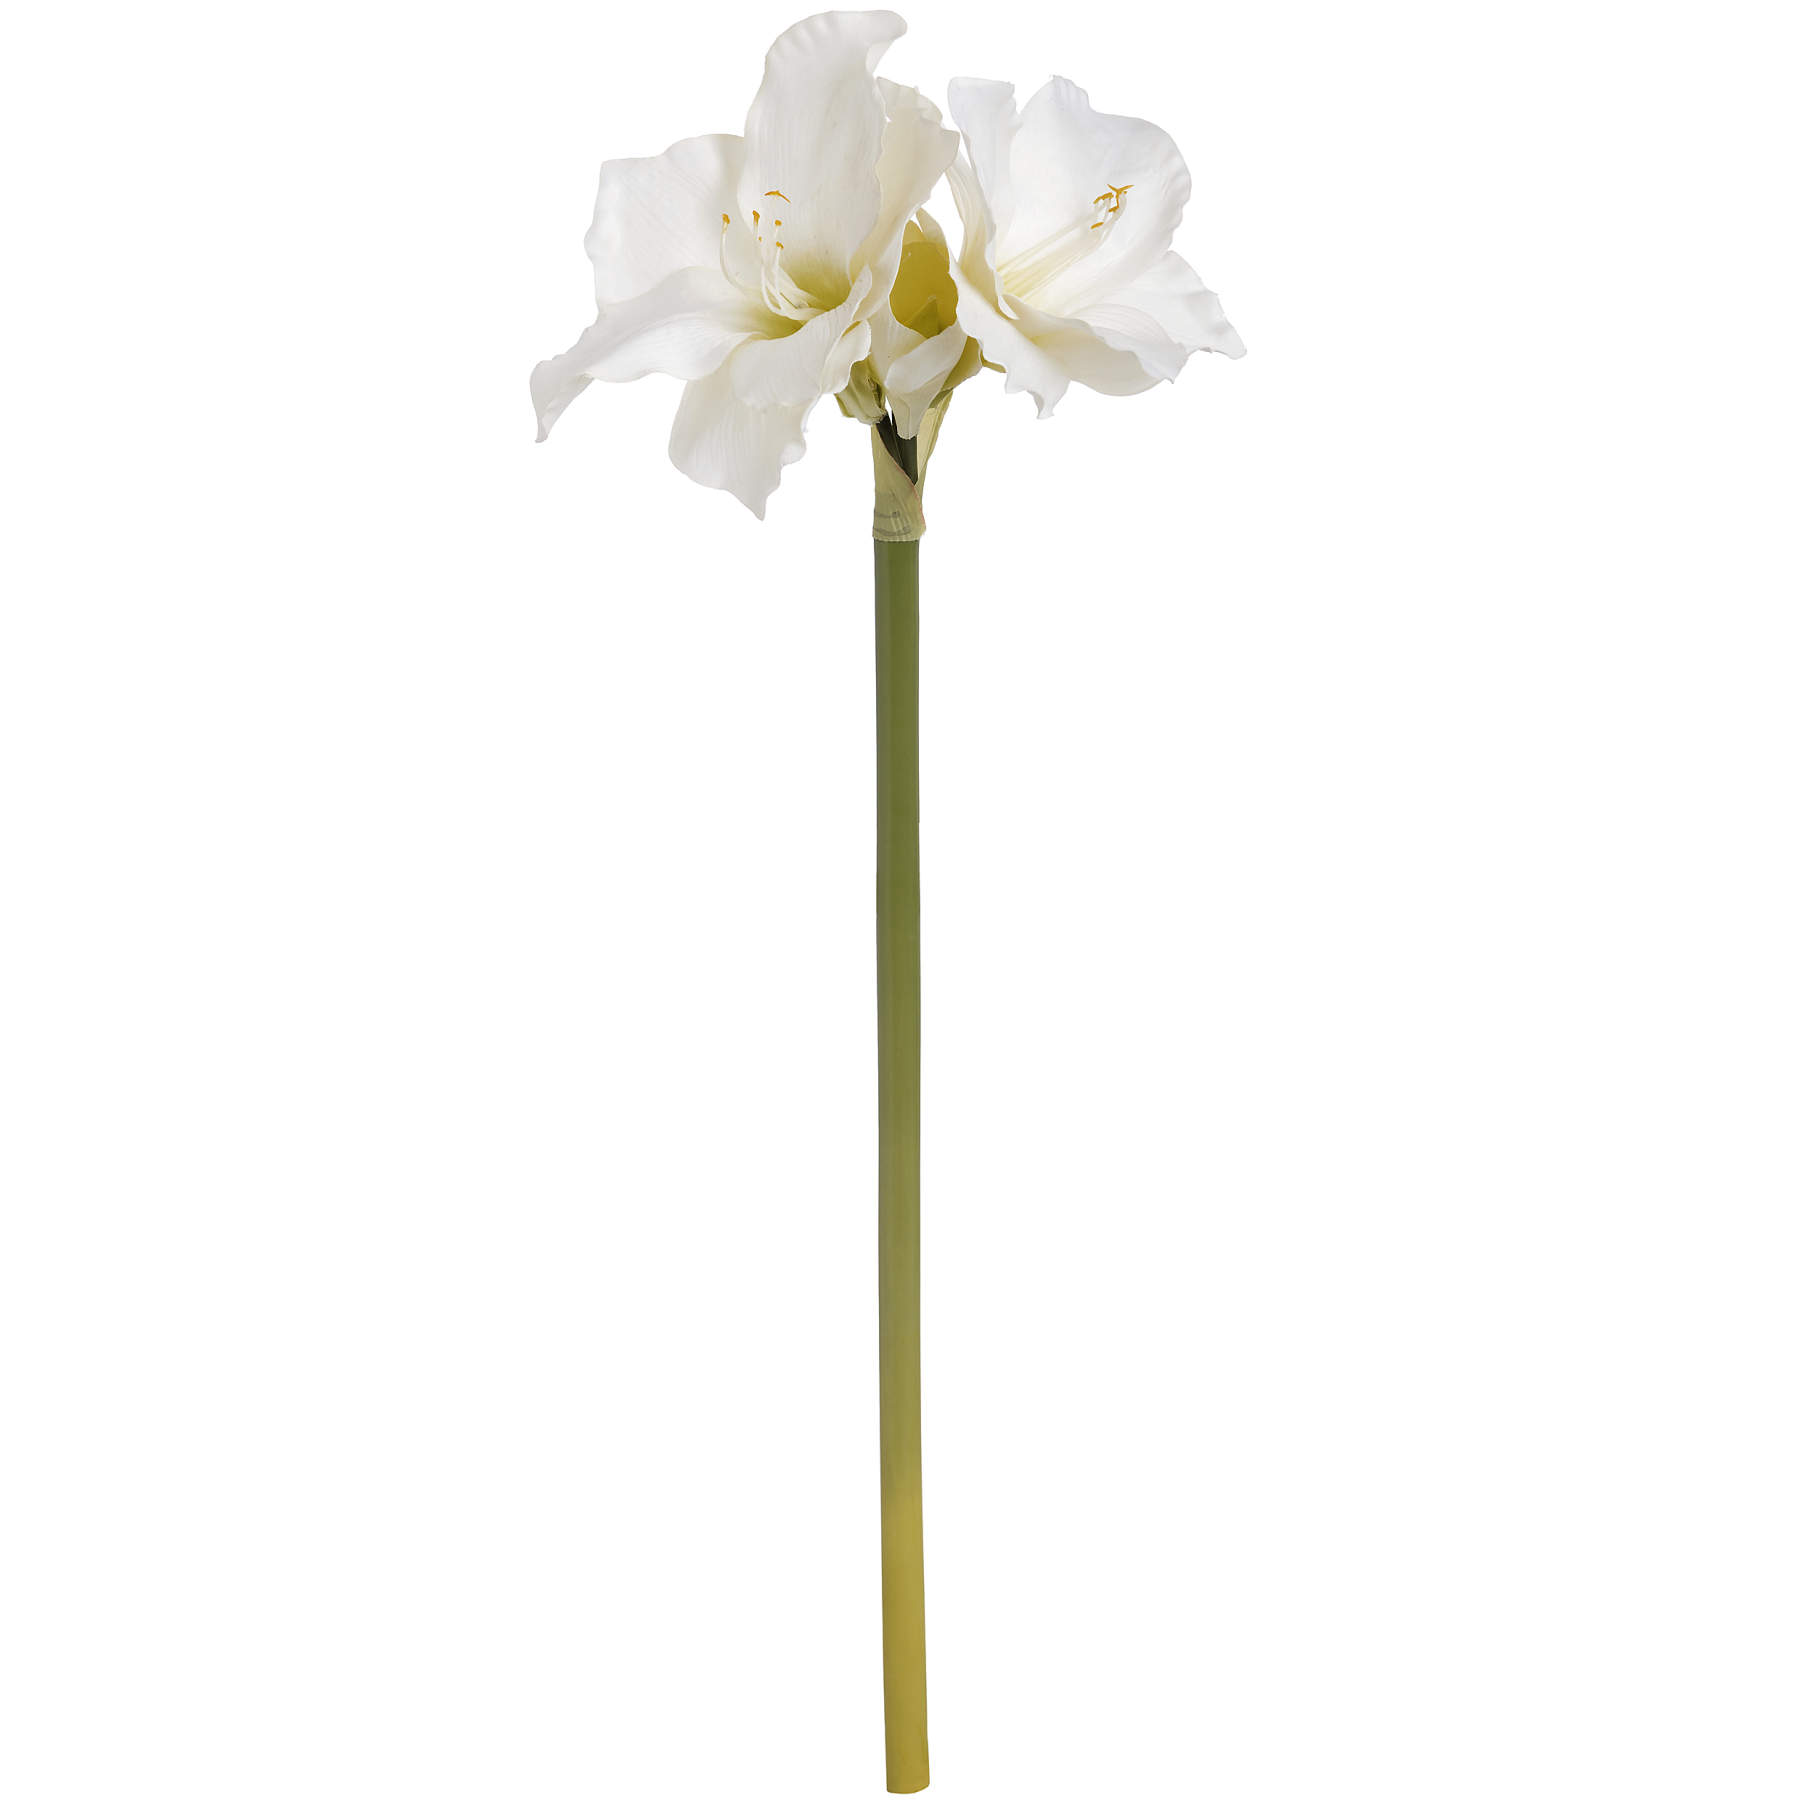 Classic White Amaryllis Flower - Image 4